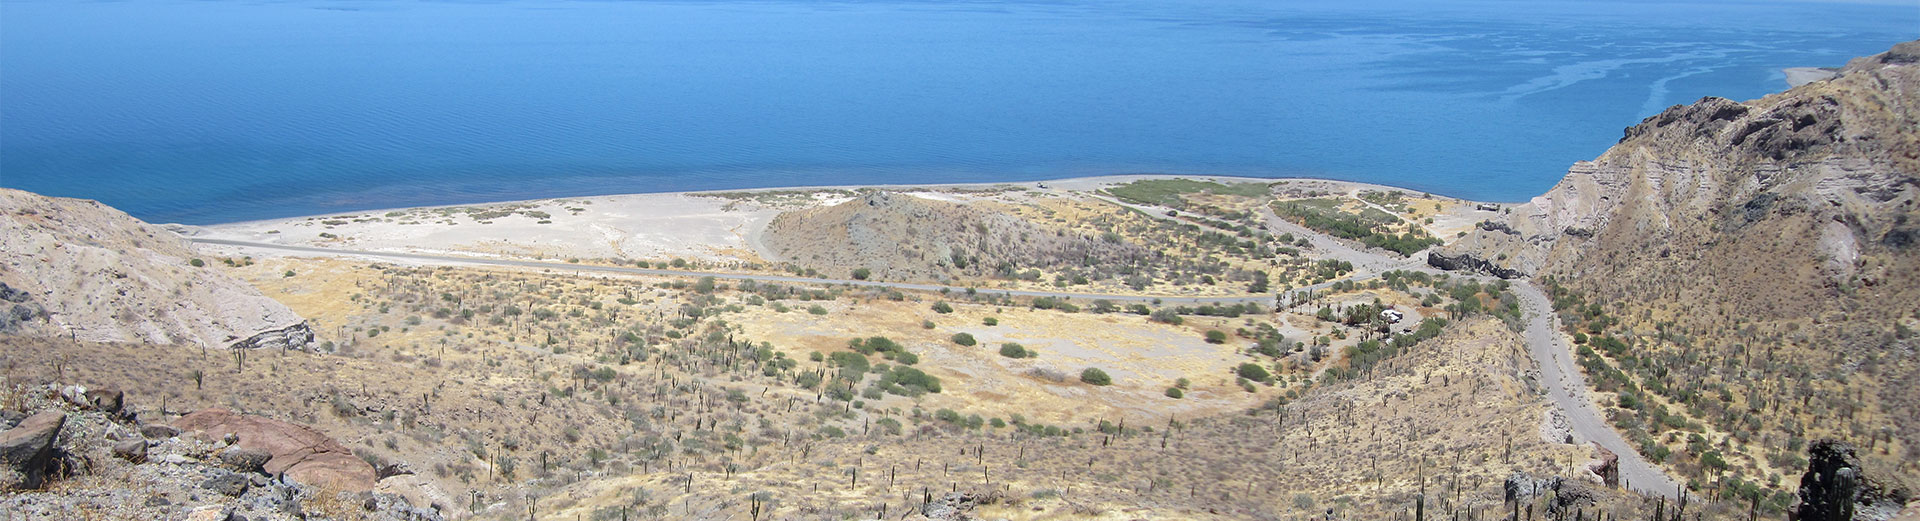 camaron beach aerial view